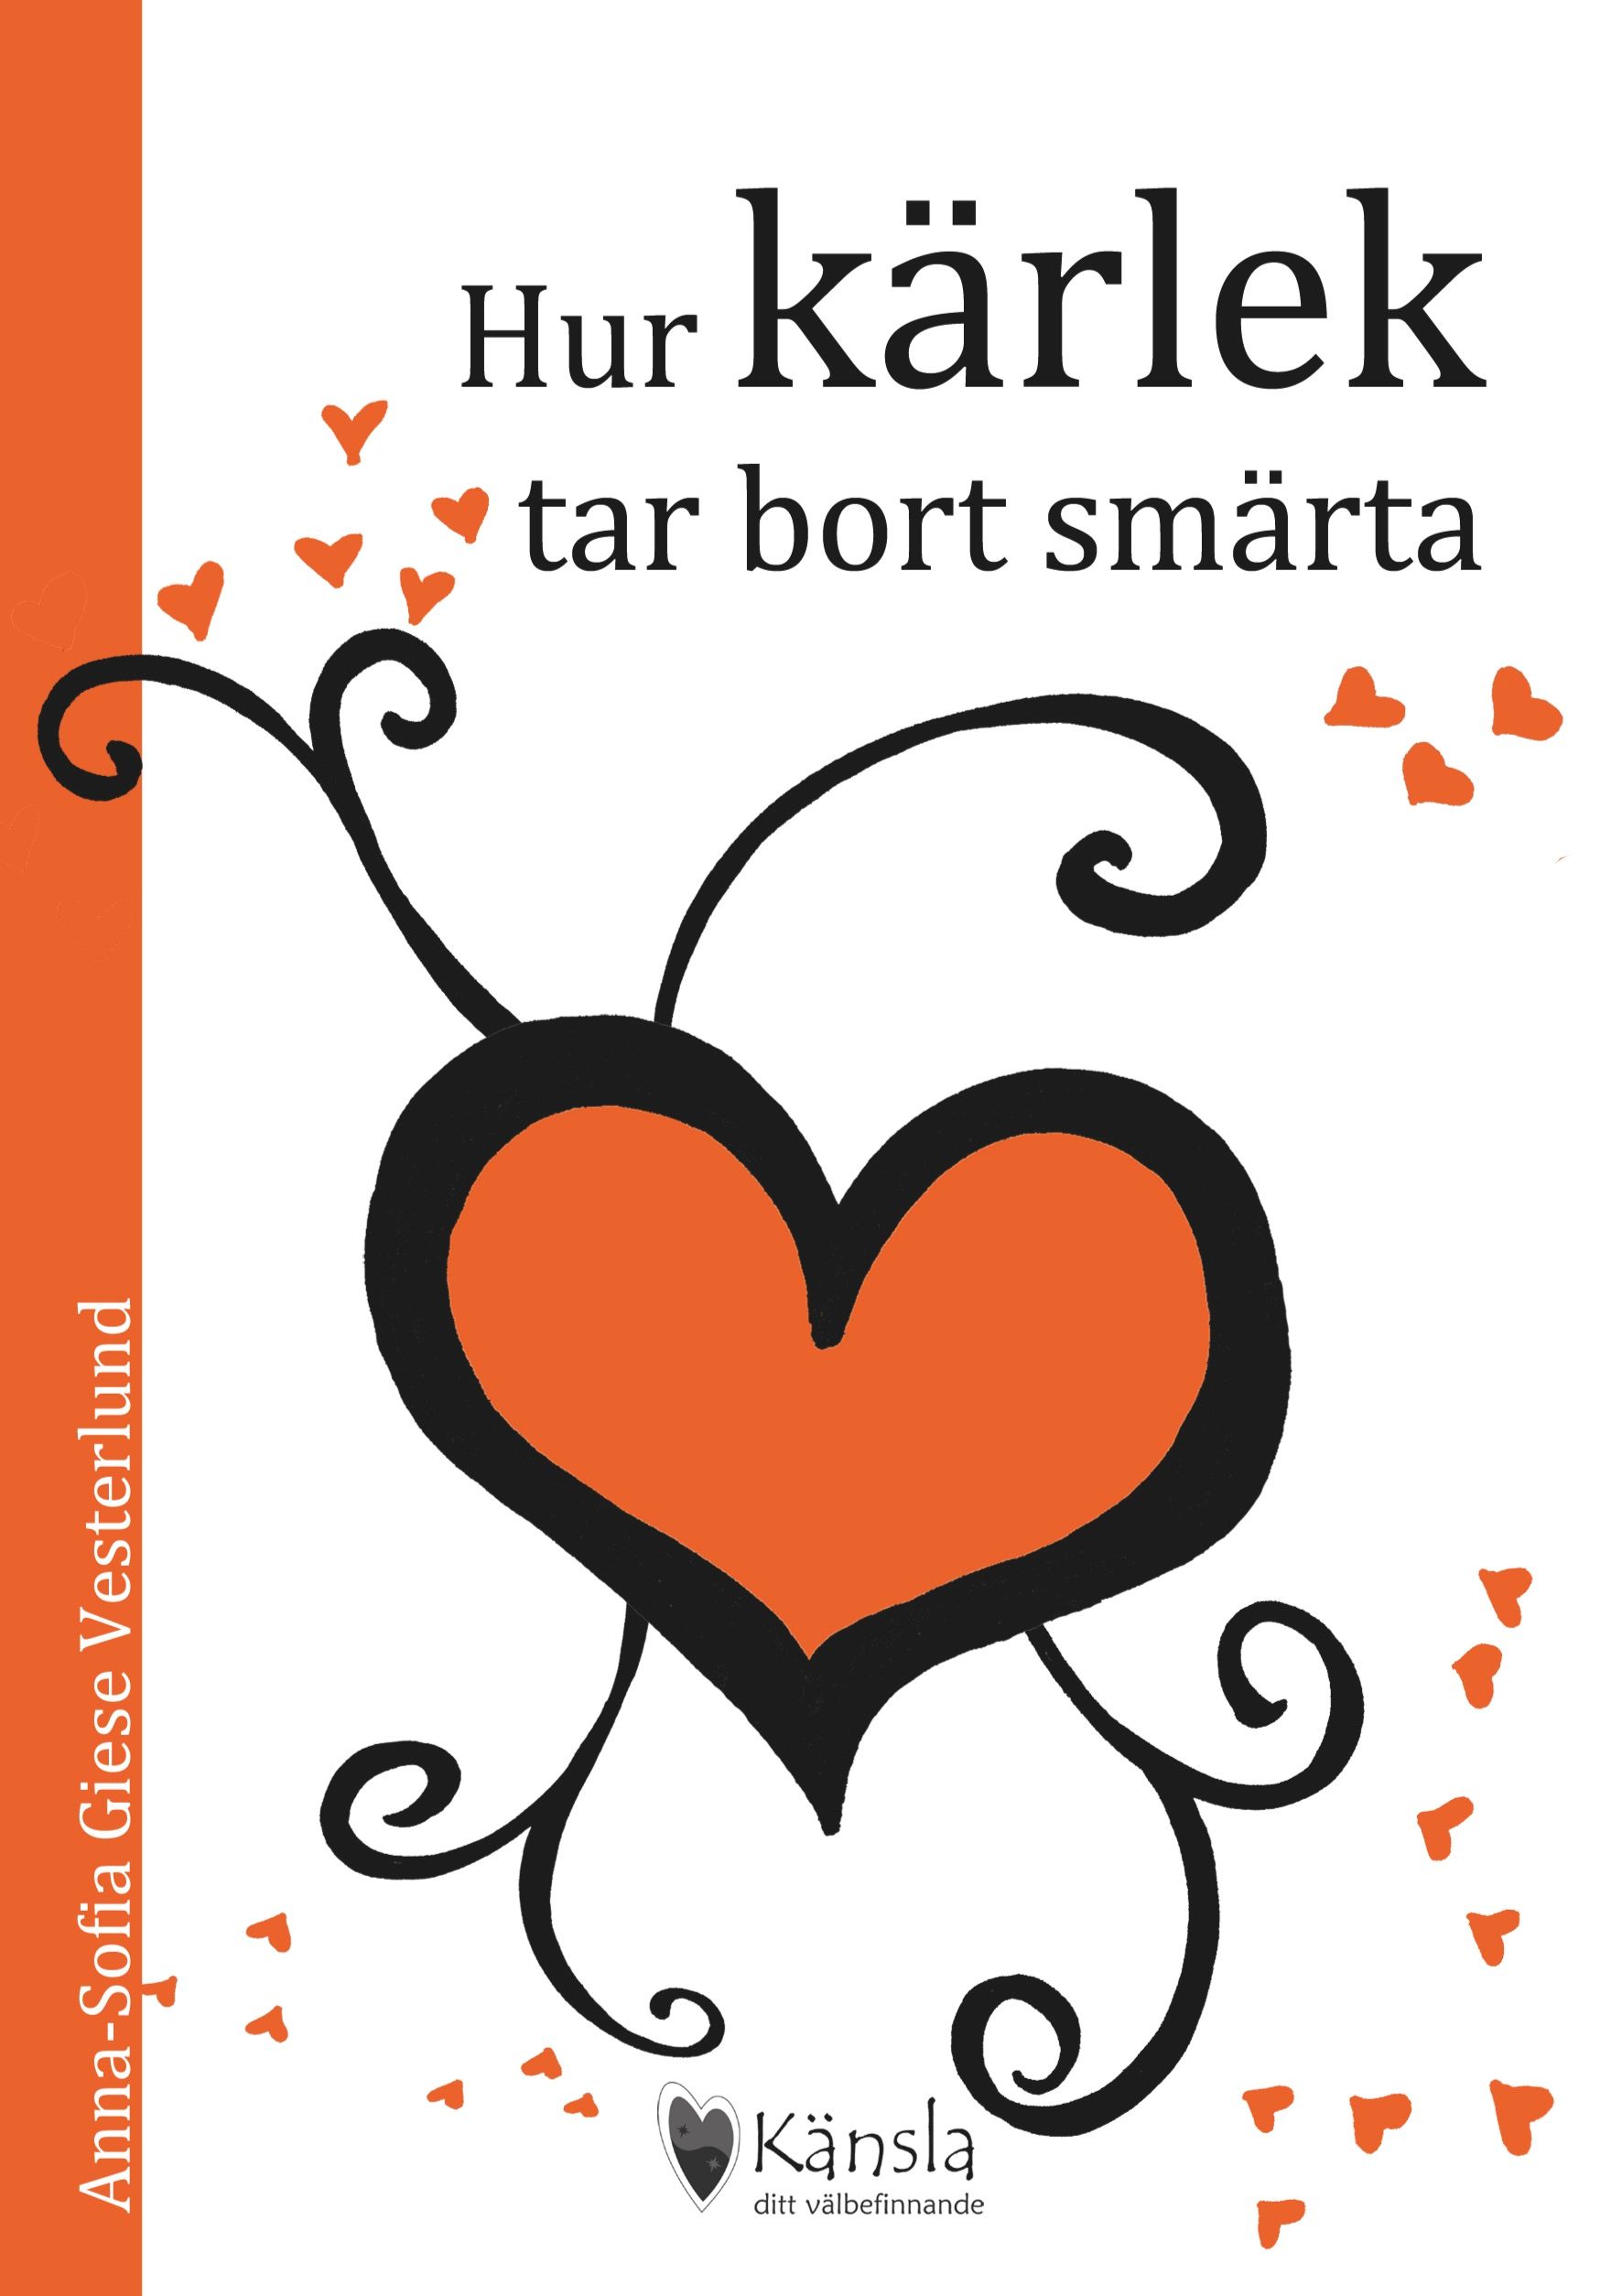 Hur kärlek tar bort smärta, e-bok av Anna-Sofia Giese Vesterlund